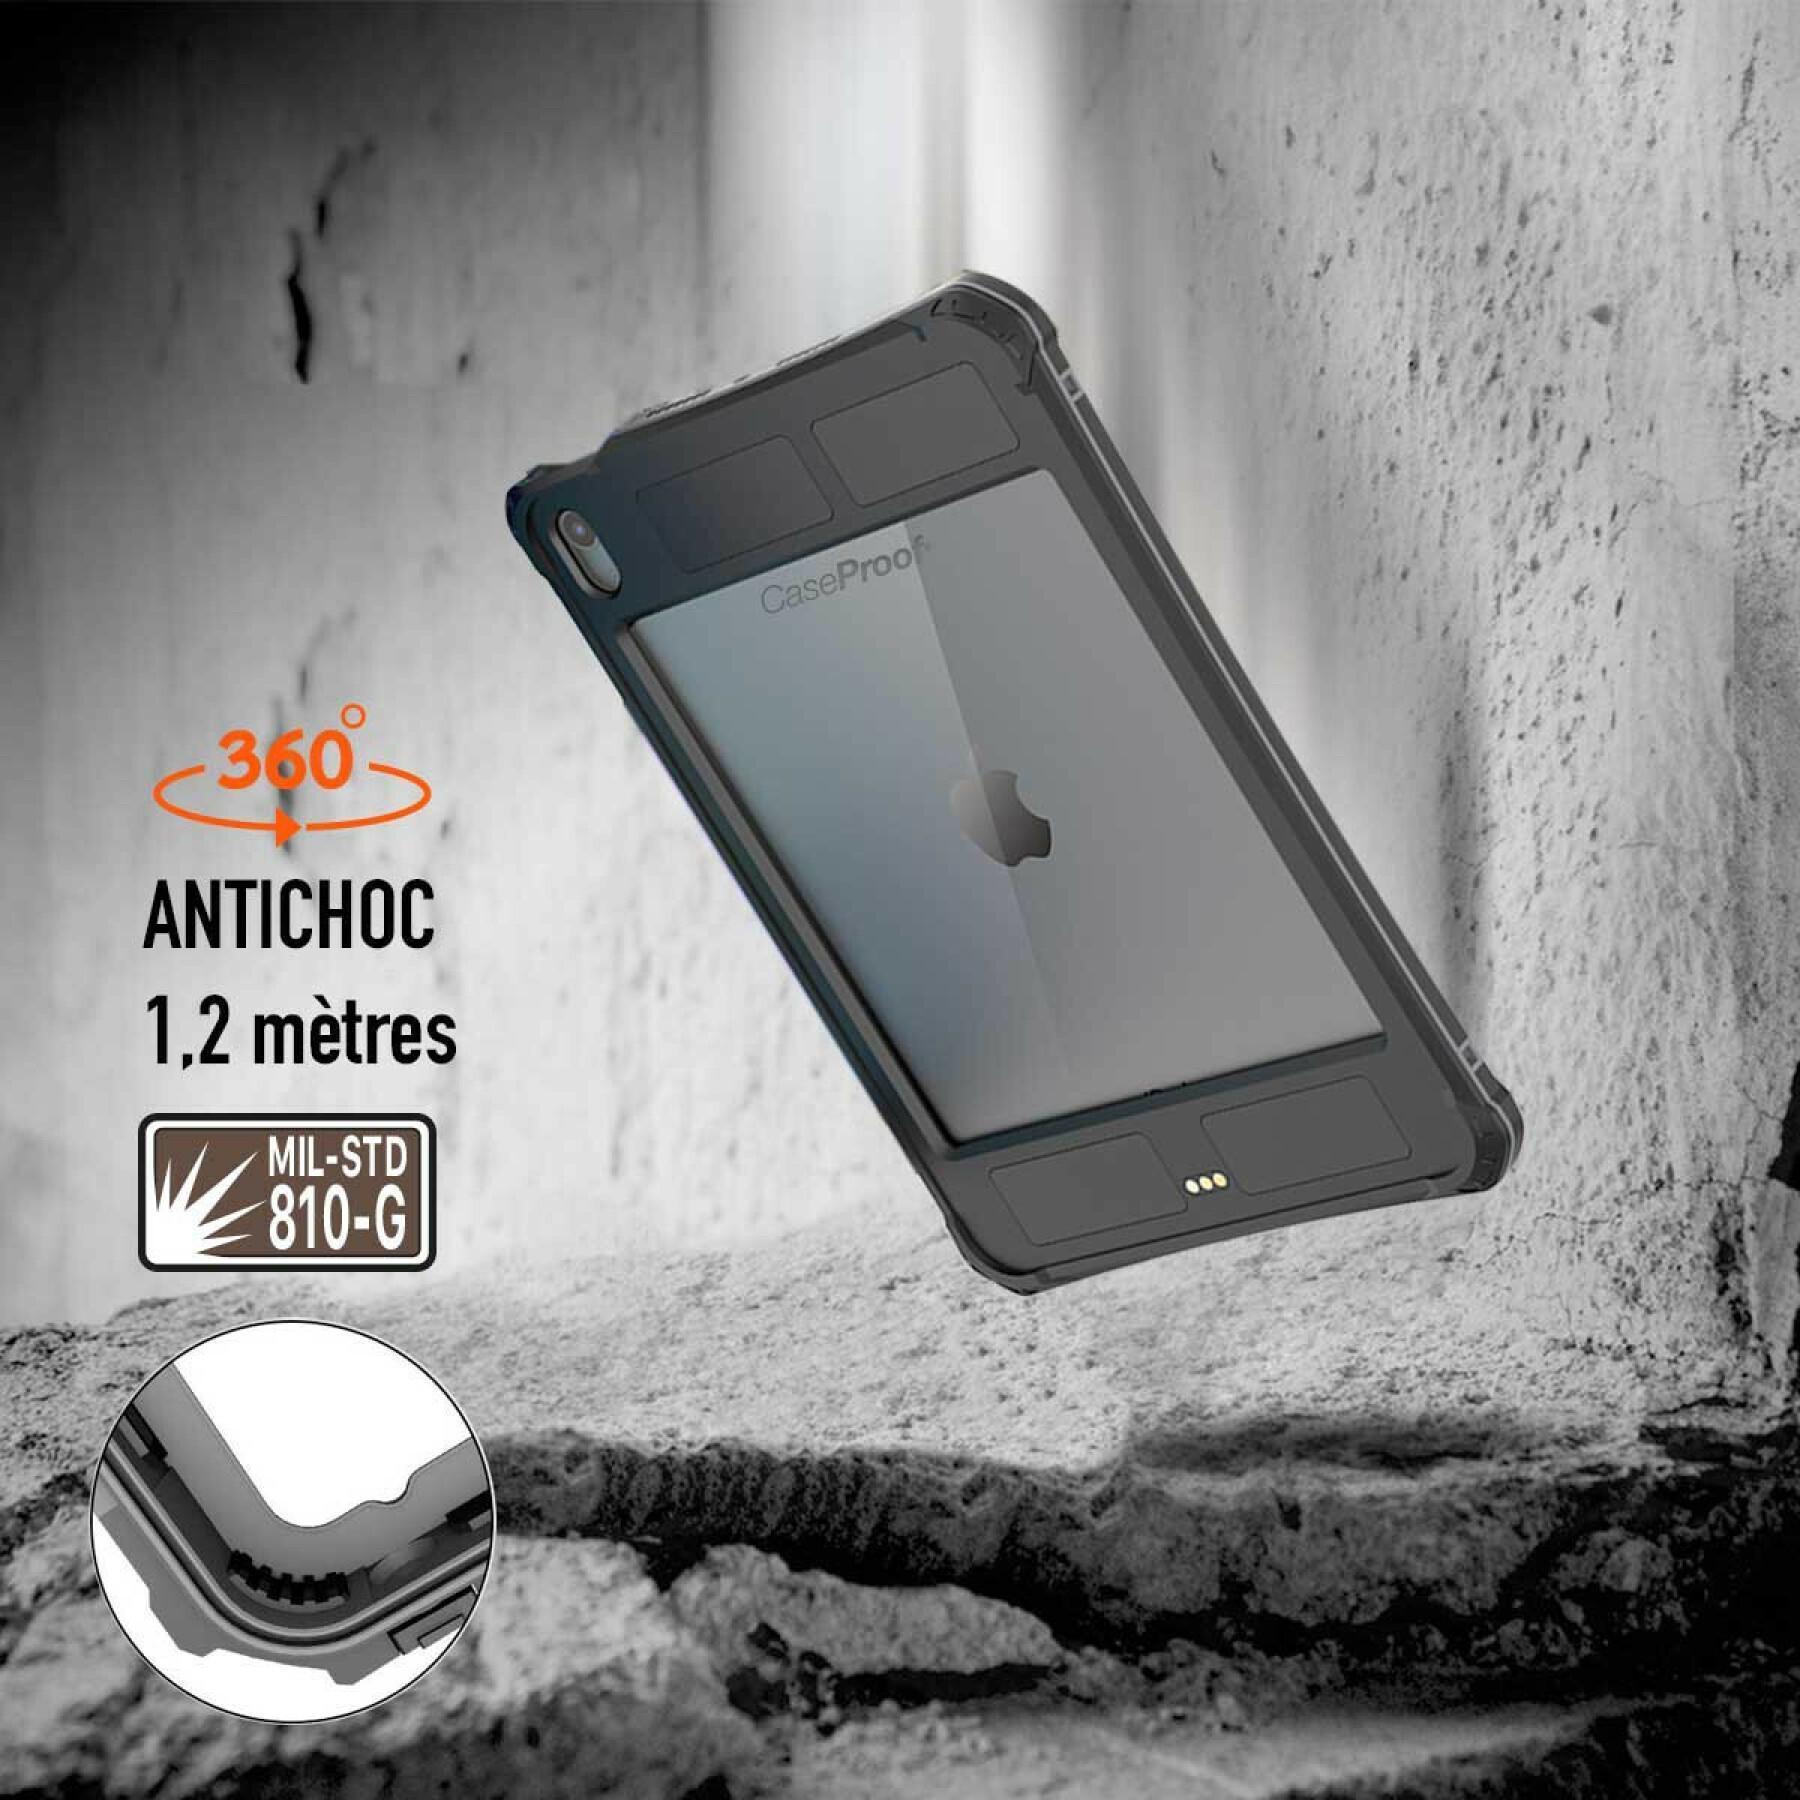 Custodia per smartphone ipad air 5 /4 impermeabile e antiurto CaseProof